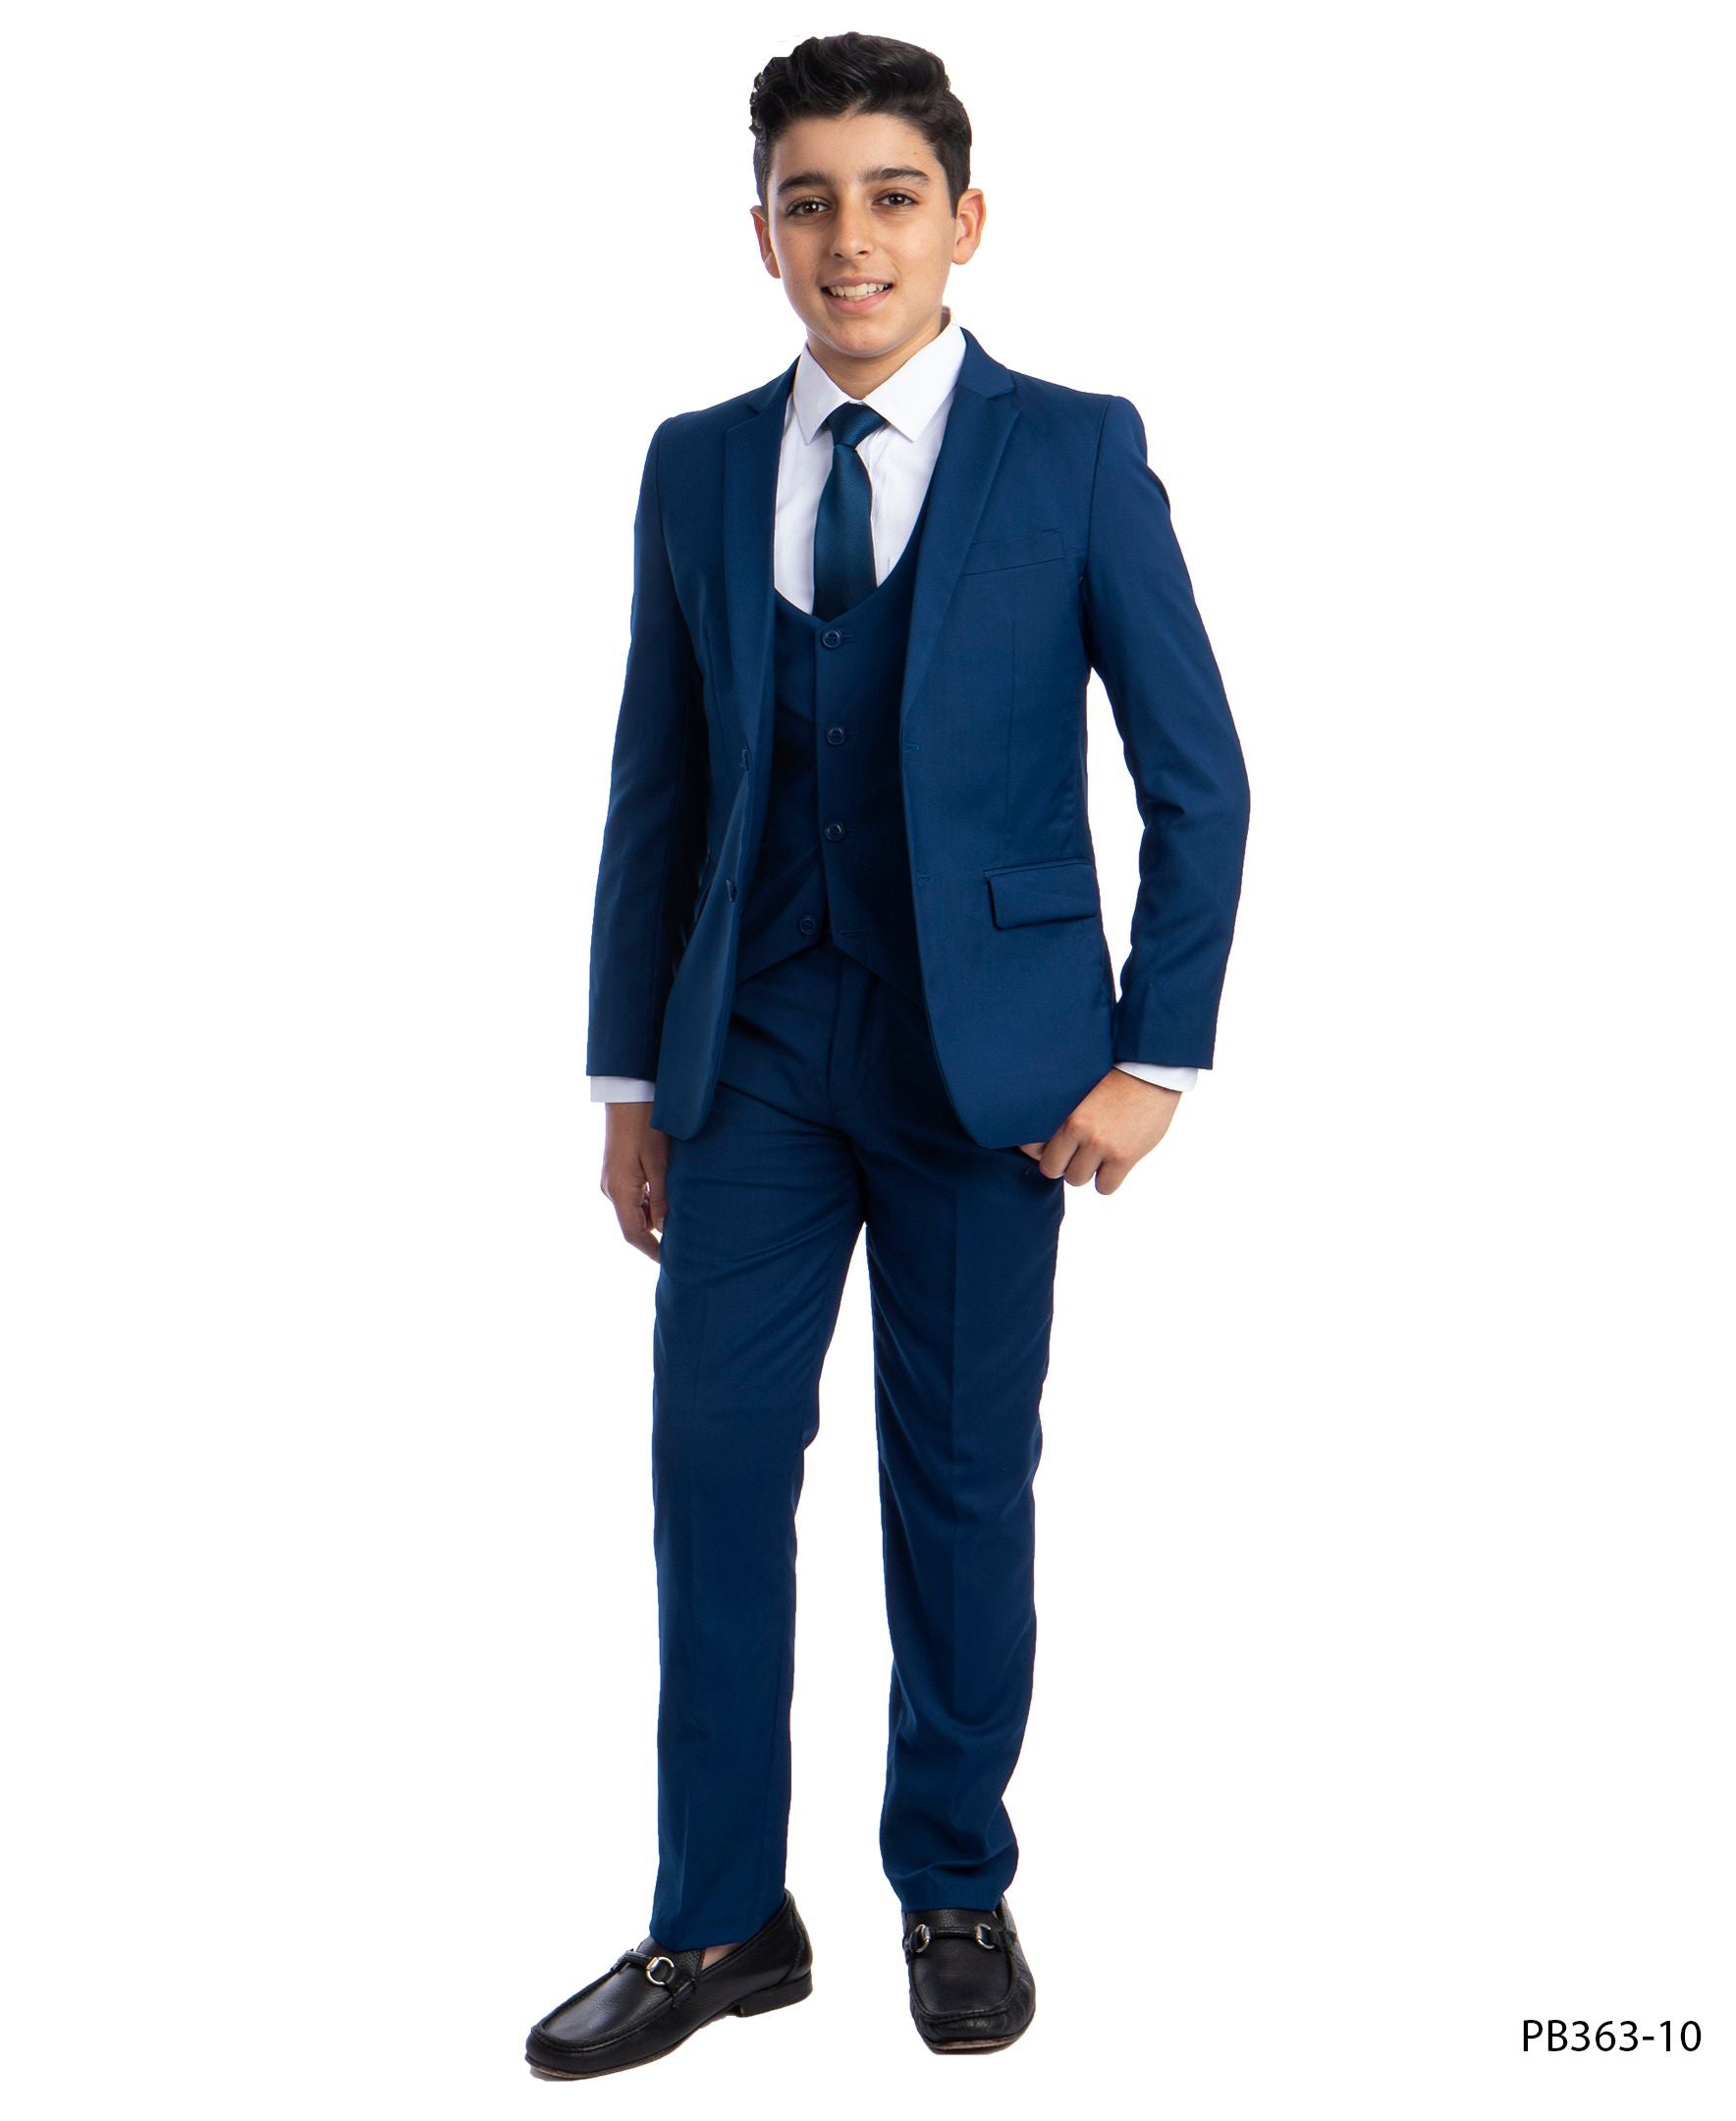 Perry Ellis Portfolio Slim Fit Suit, Men's